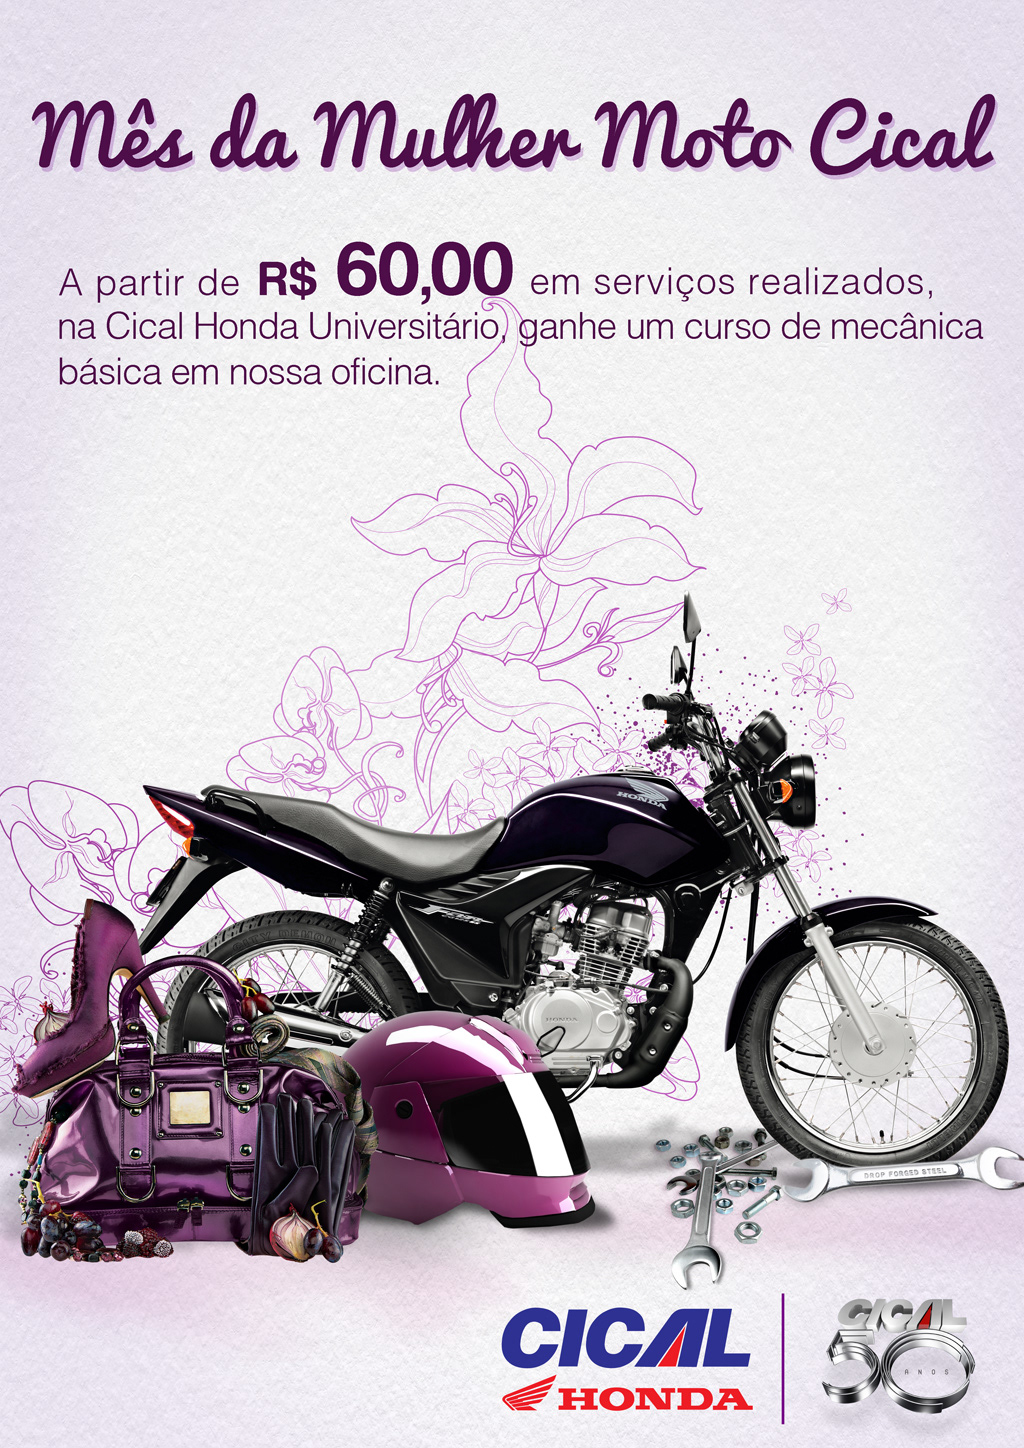 Cical Motos Honda